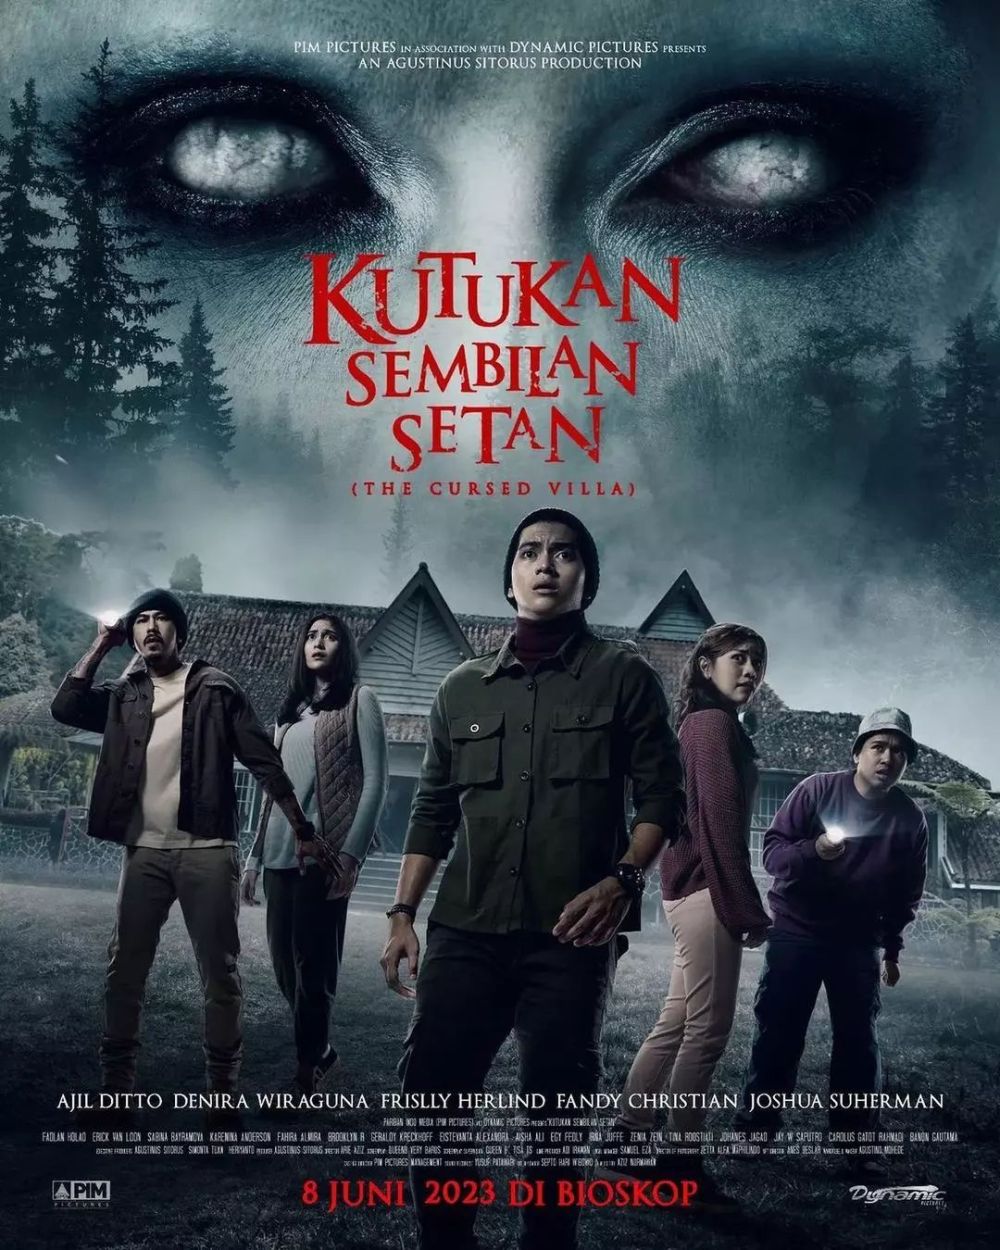 9 Film Dan Series Indonesia Yang Siap Tayang Juni 2023 